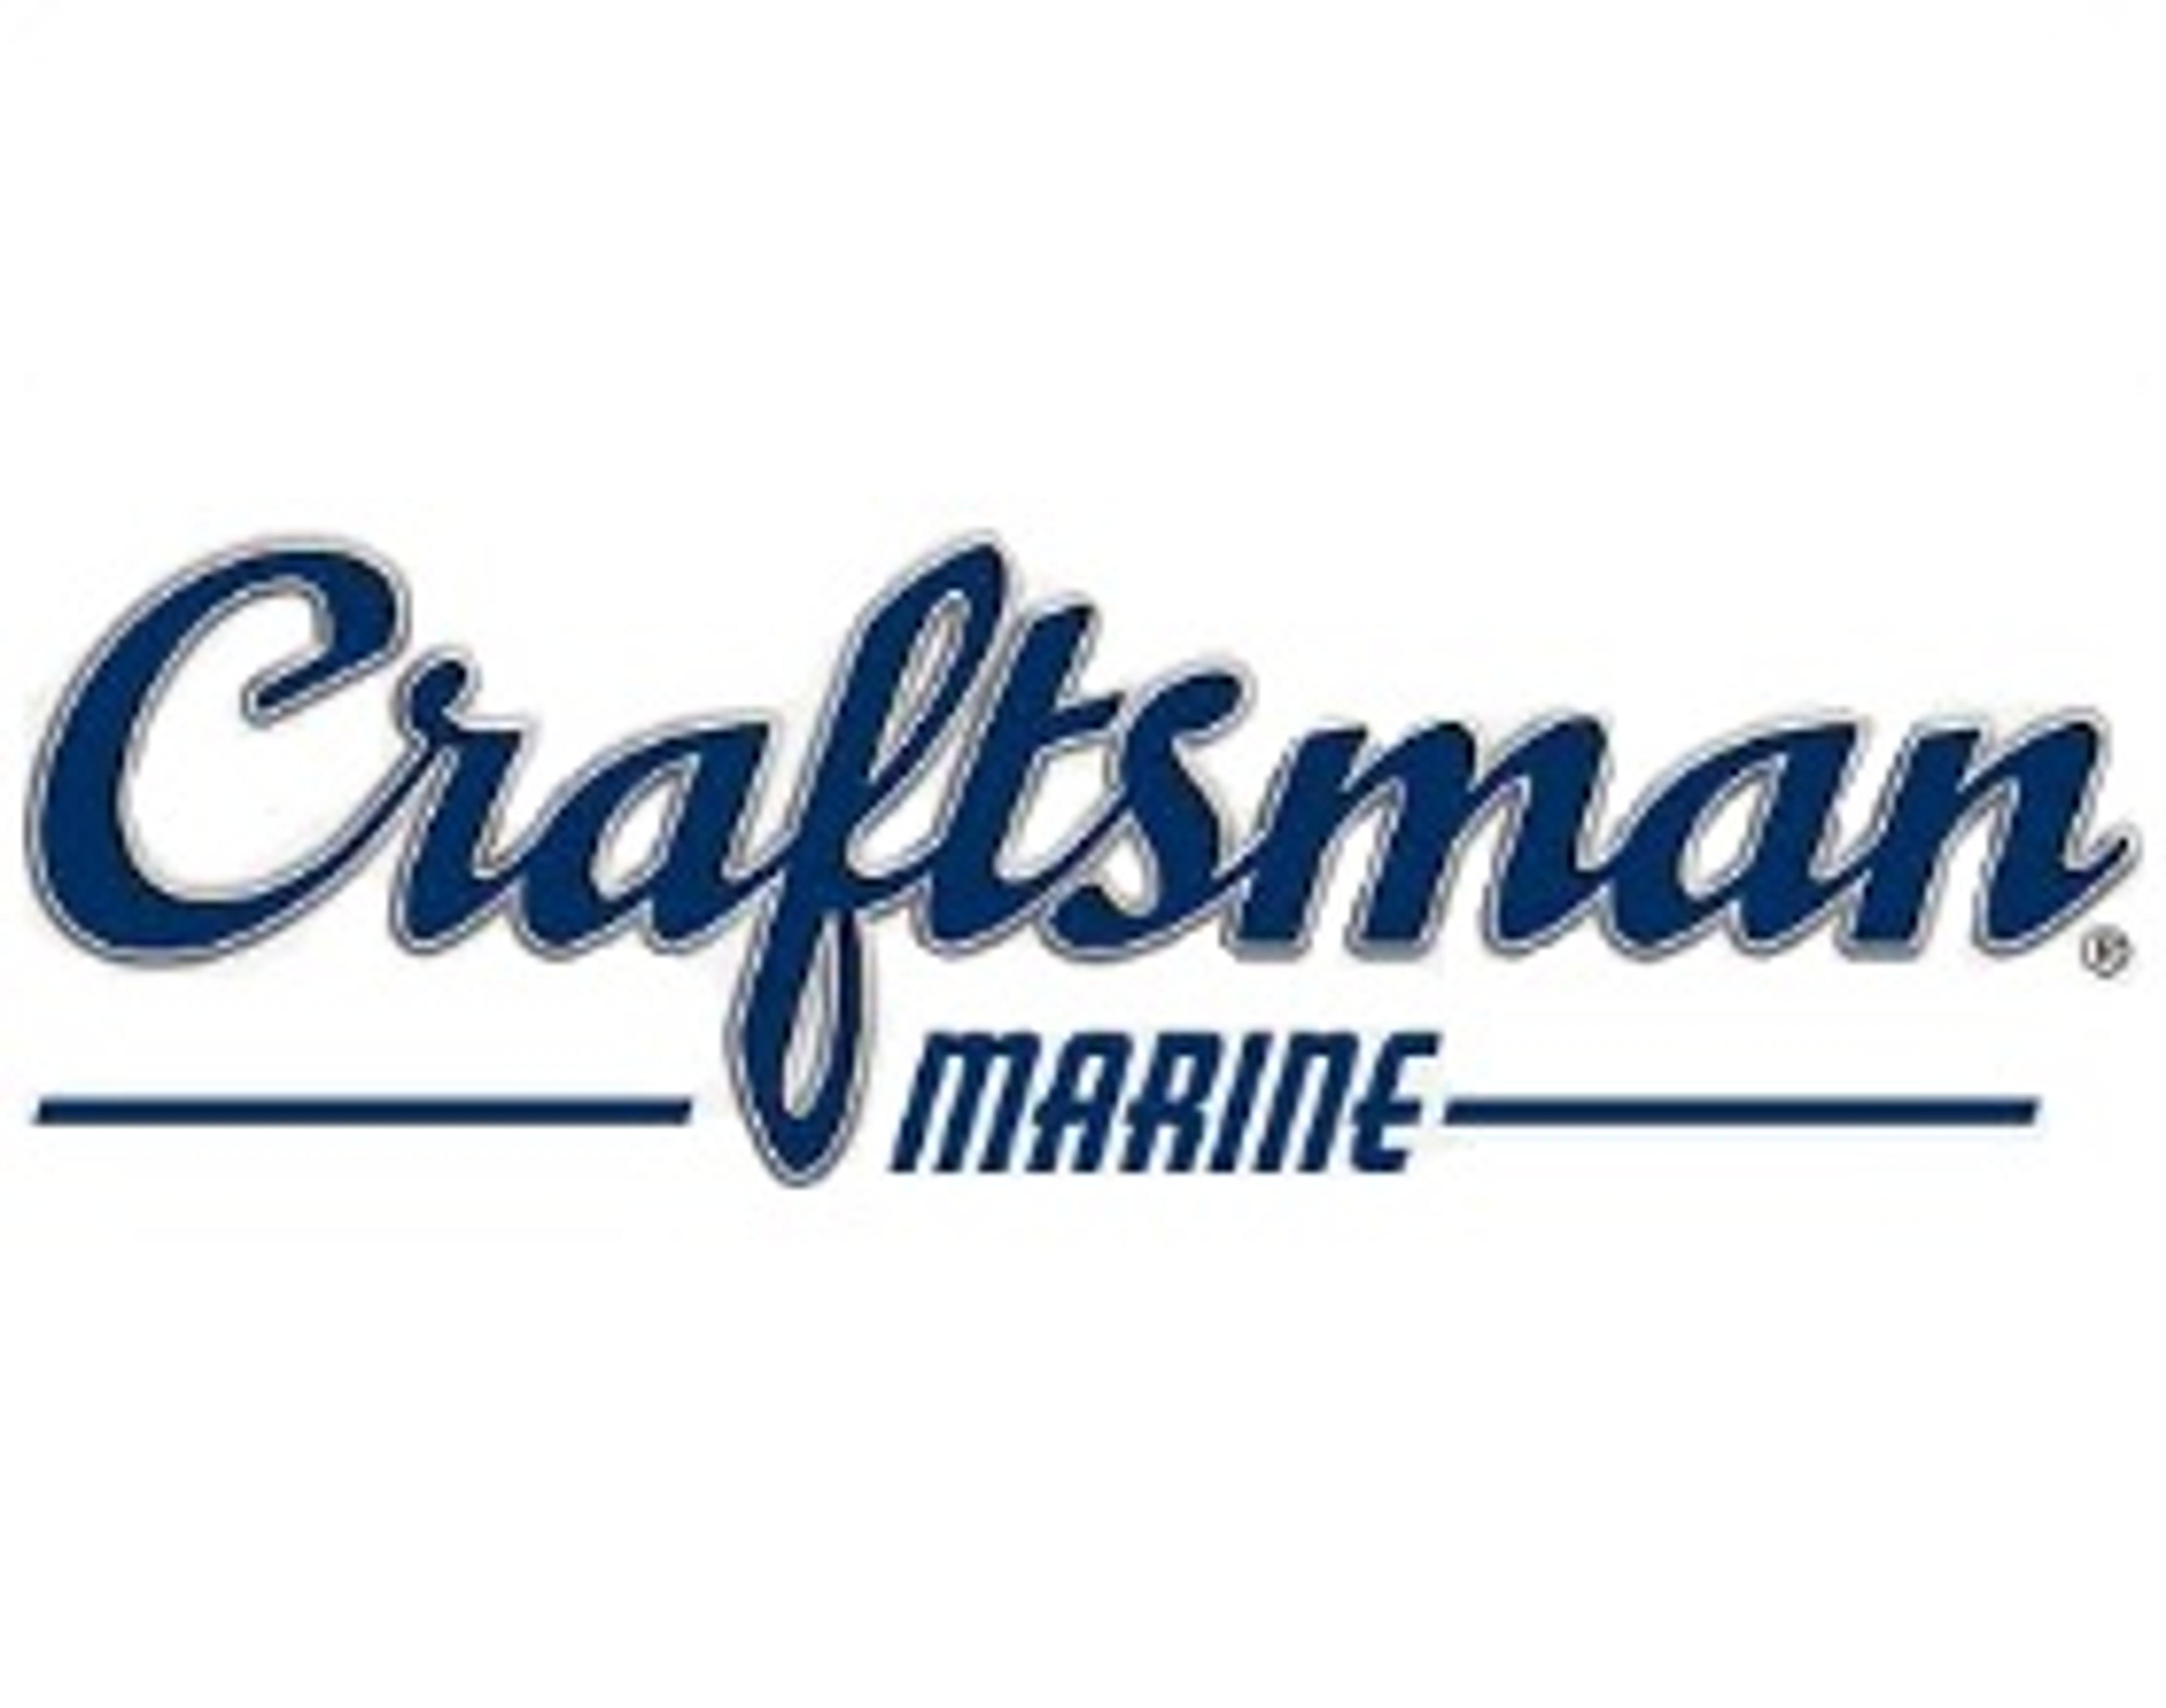 Köp dina båtmotordelar till Craftsman hos oss!